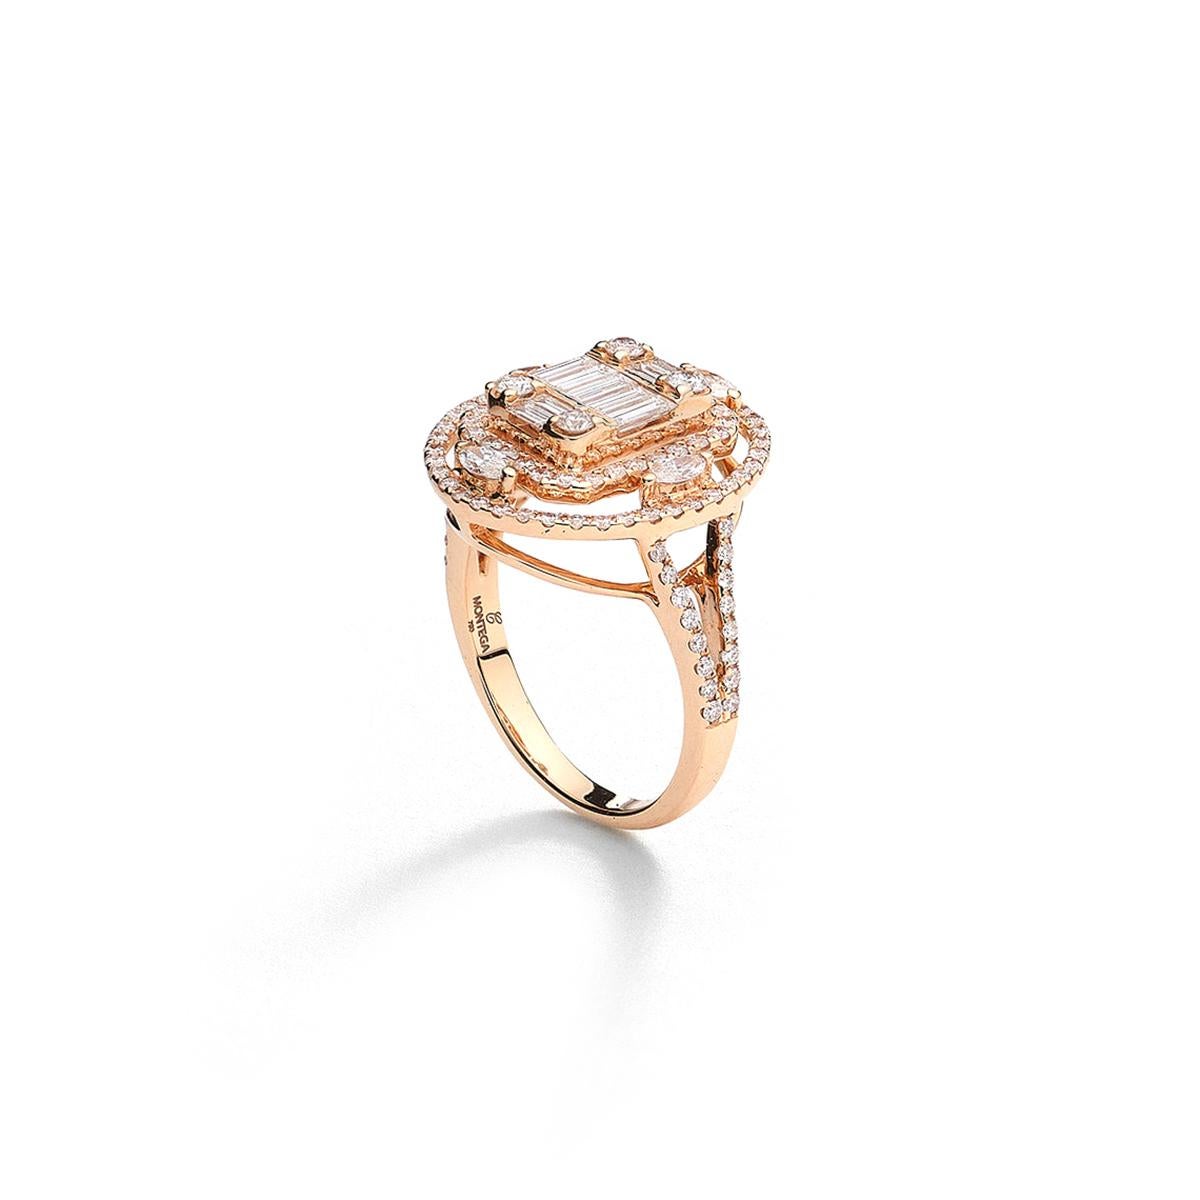 Ring aus 18 Karat Rotgold, besetzt mit 13 Diamanten im Baguette- und Marquise-Schliff (0,61 ct) und 104 Diamanten (0,67 ct) Größe 53

Gesamtgewicht: 6,02 Gramm